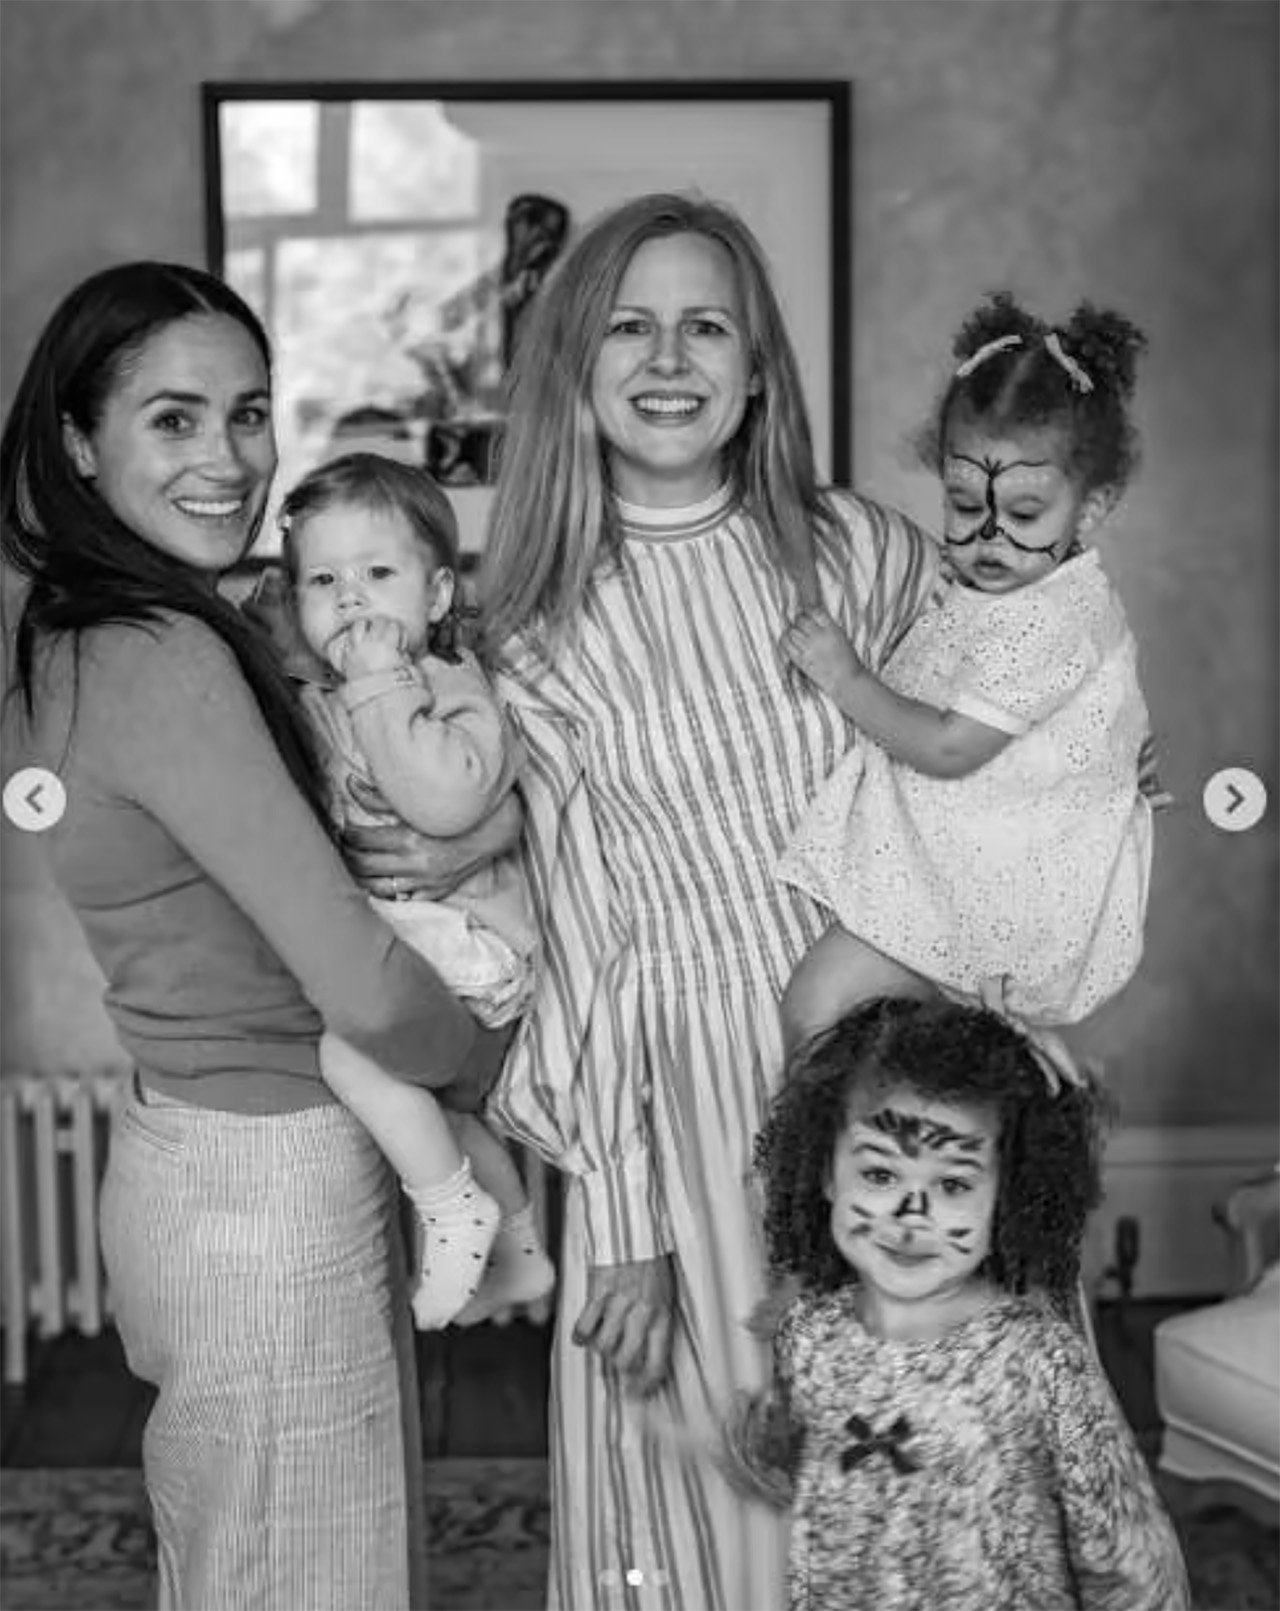 Meghan Markle memegang Lilibet saat berpose dengan seorang teman keluarga dan dua putrinya yang wajahnya dicat